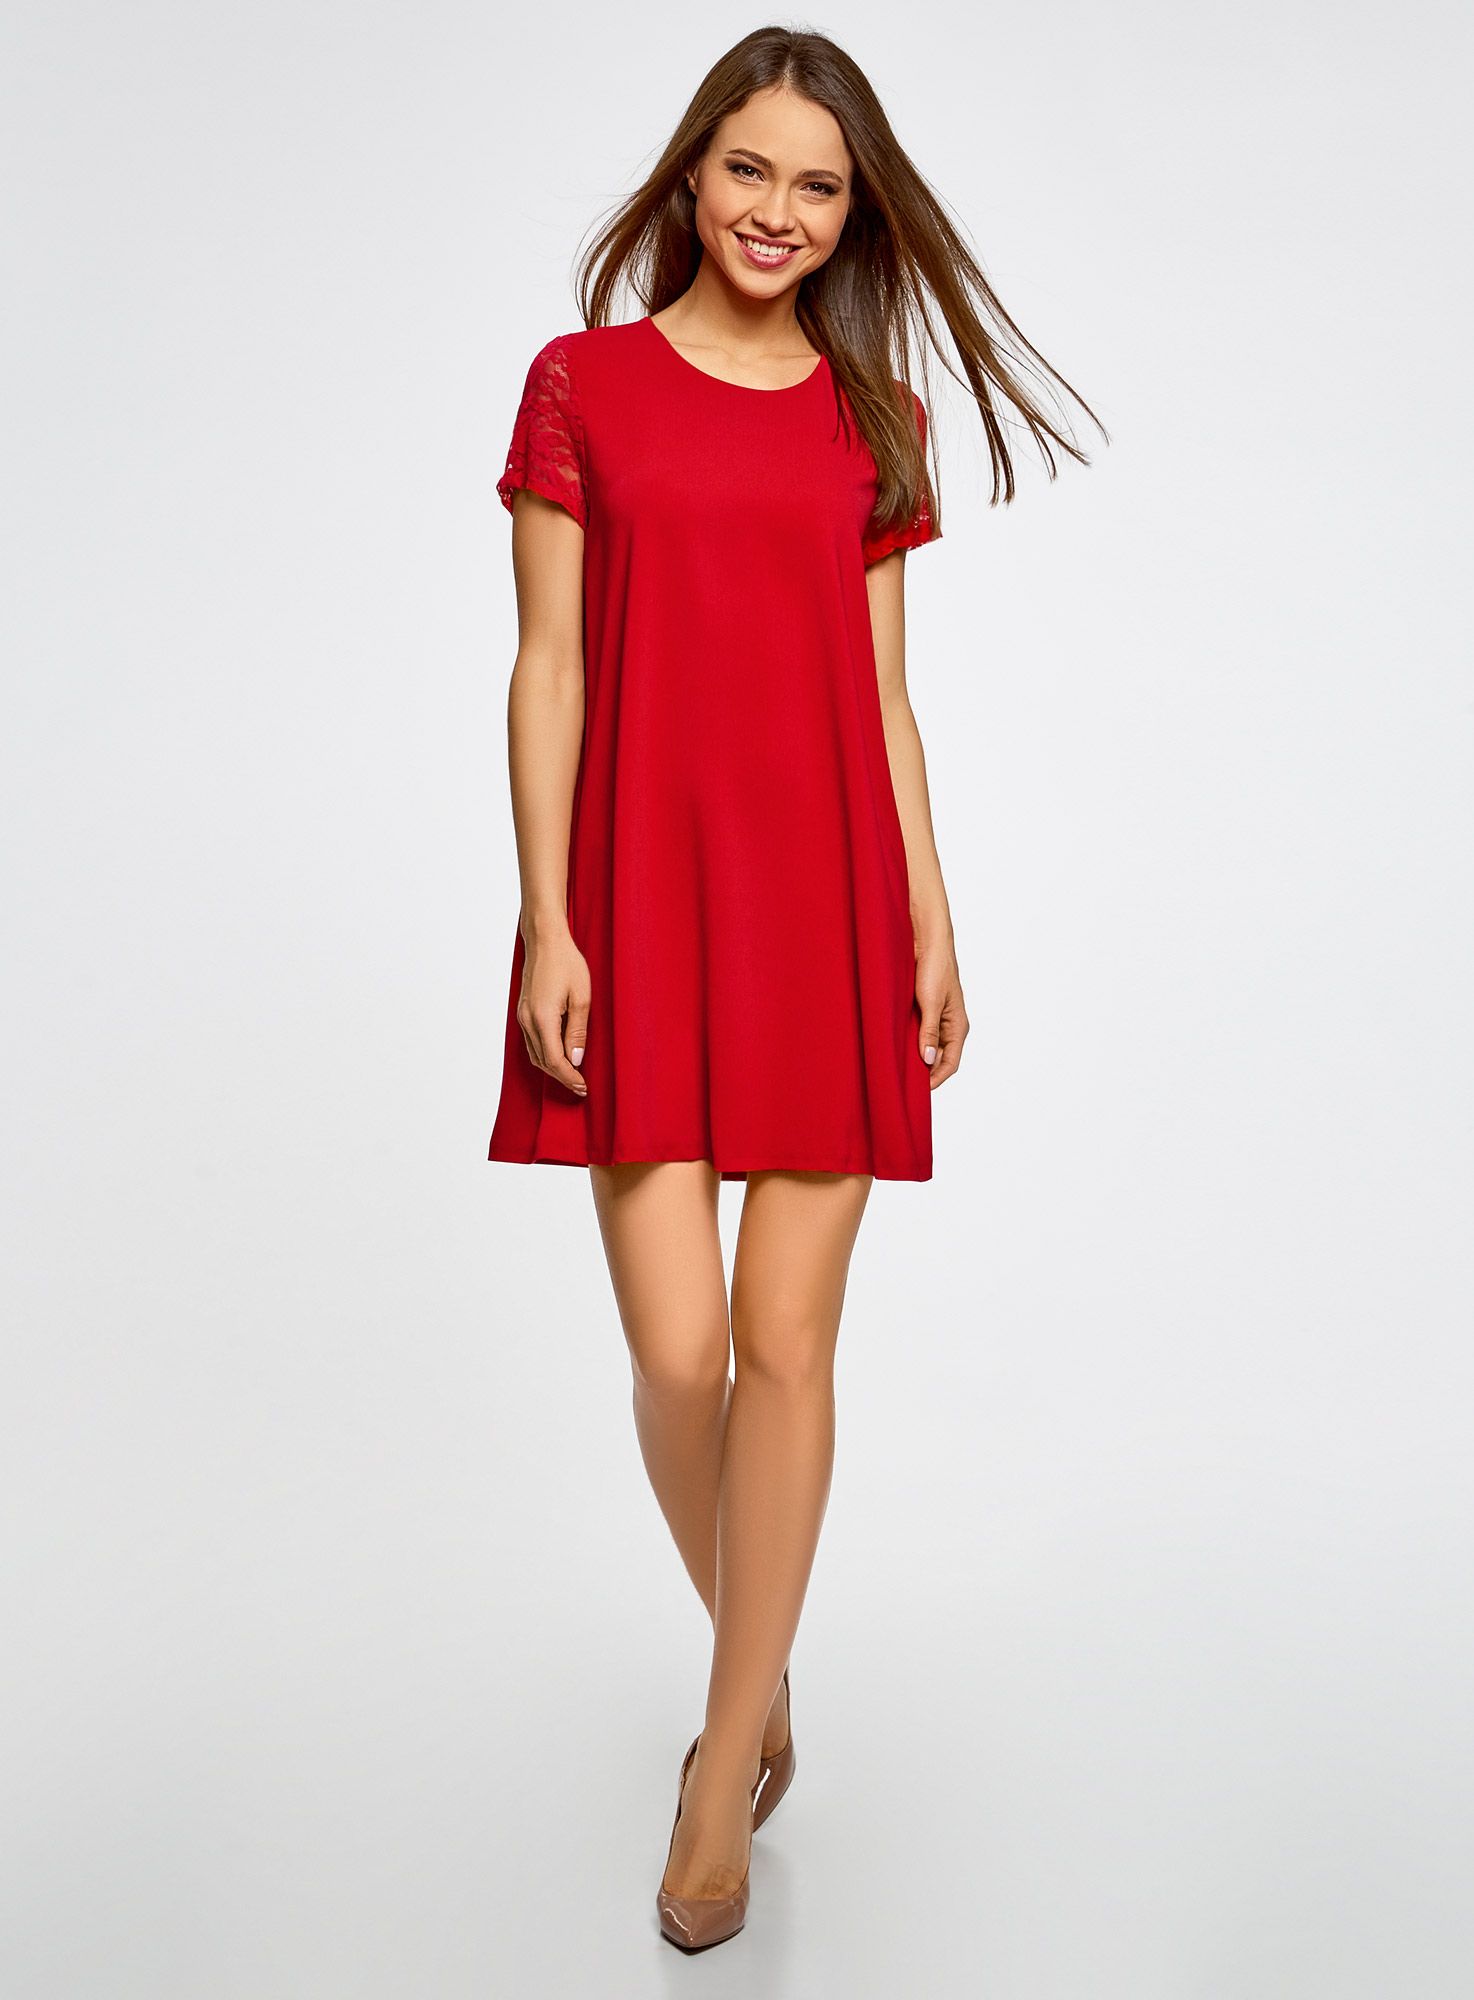 Красное свободное. Красное платье Повседневное. Обычное платье. Платье без талии. Прямое красное платье.